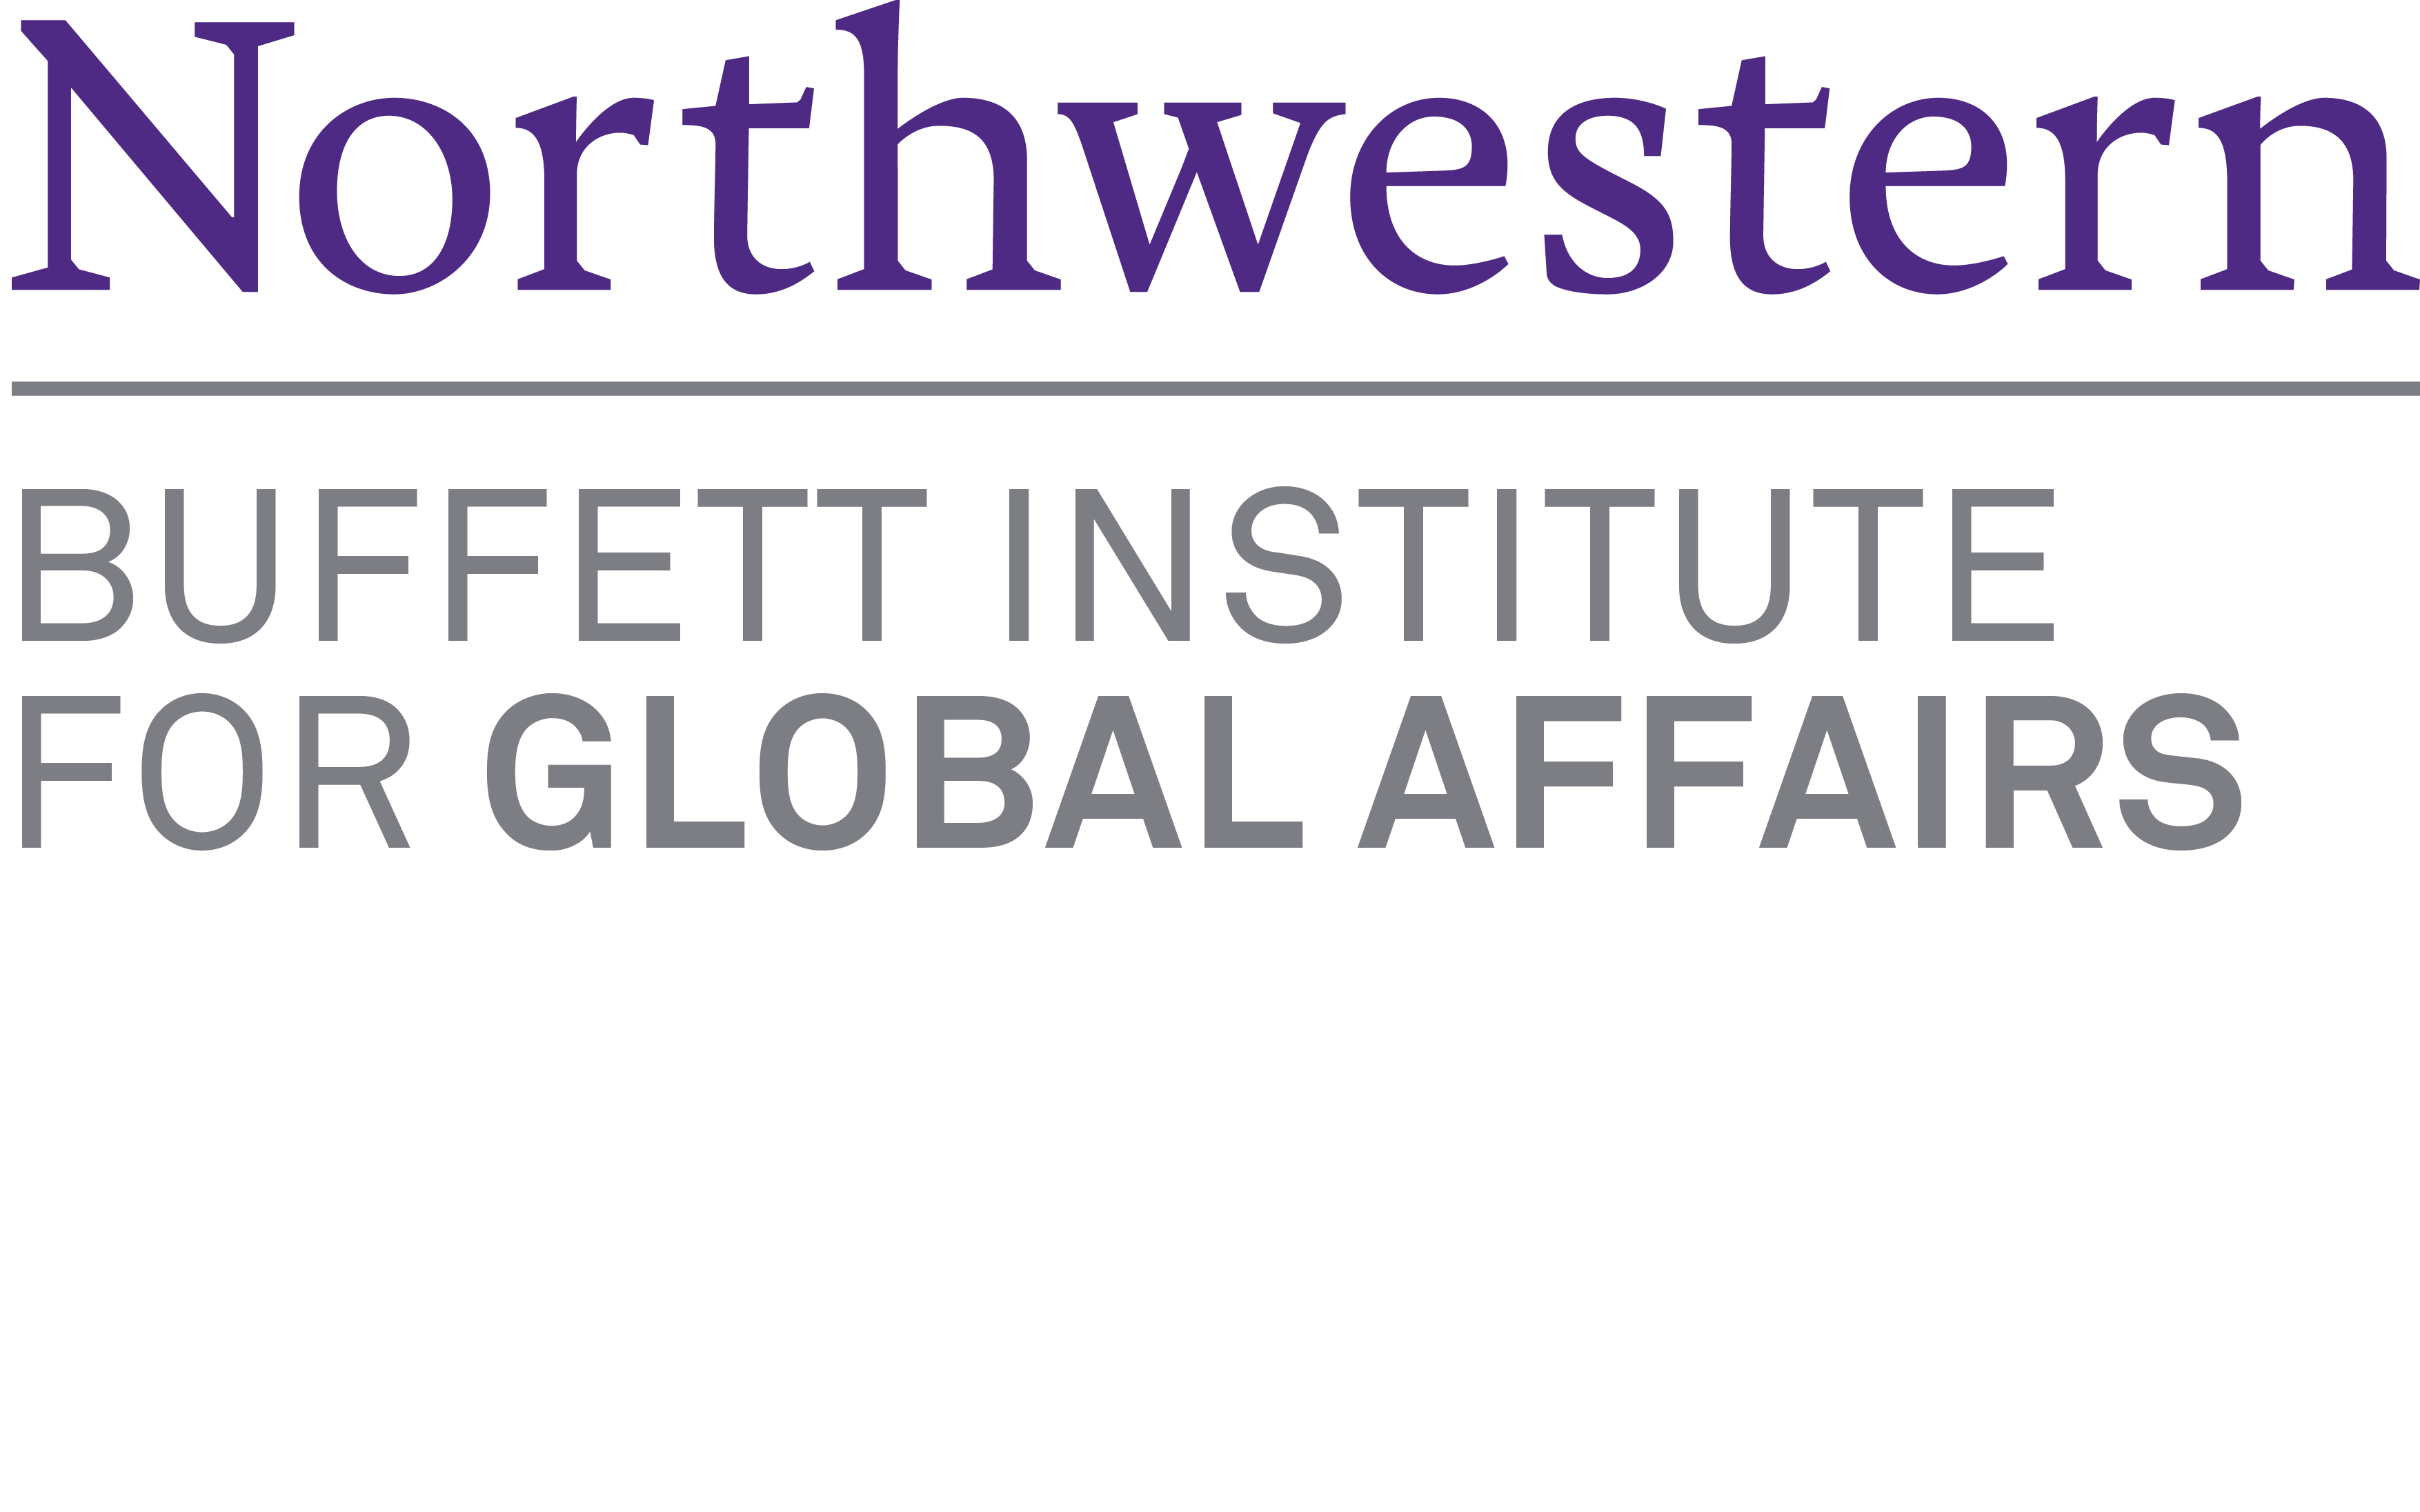 Buffett Institute for Global Affairs logo